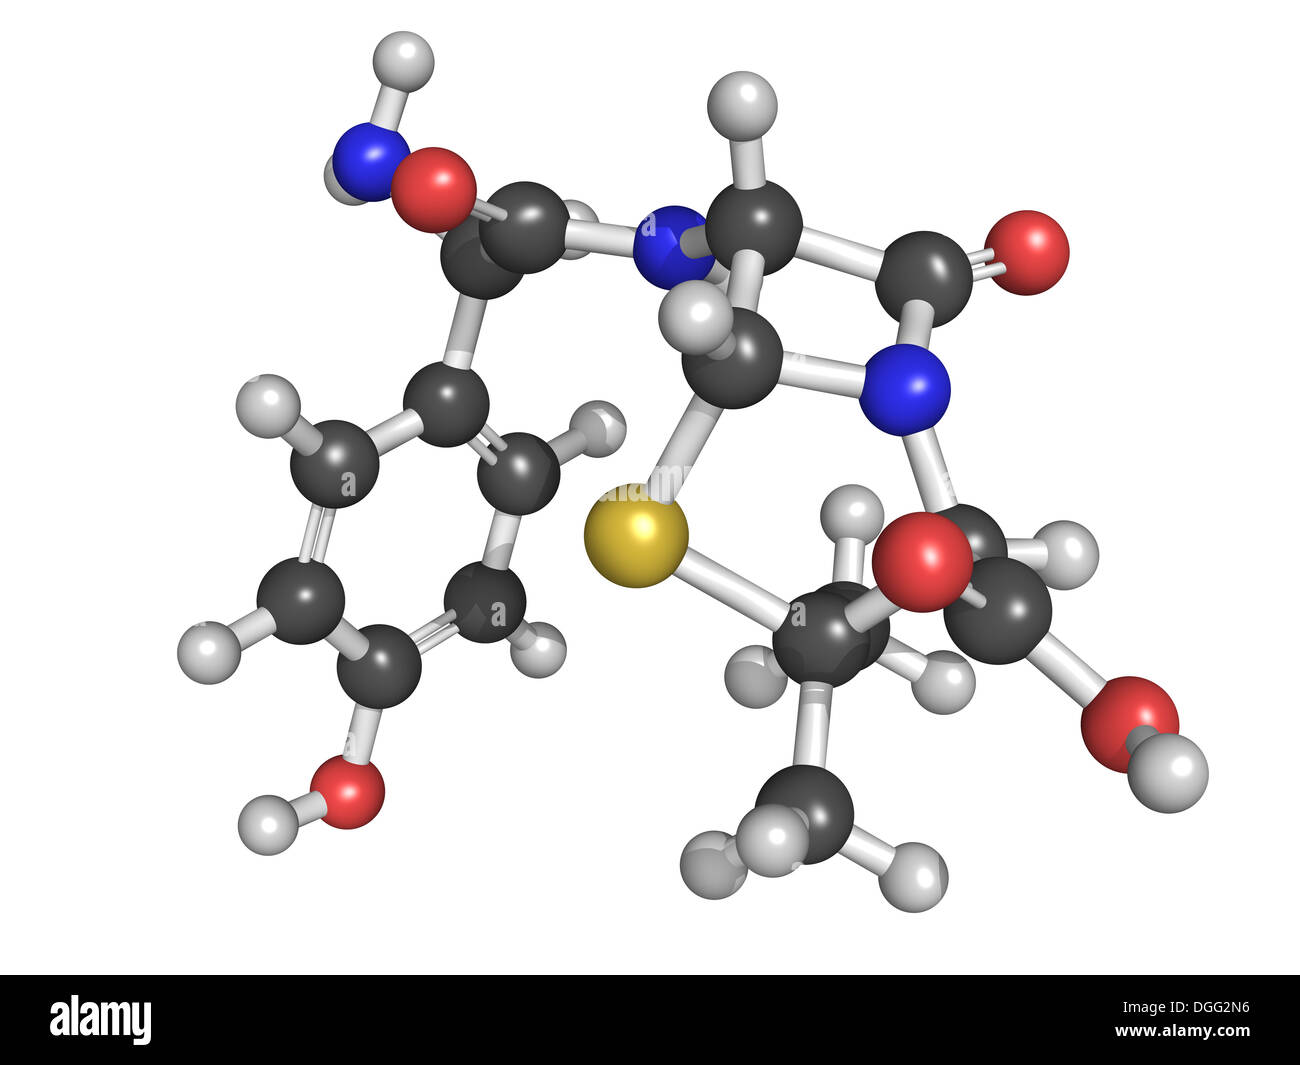 Amoxicillin Beta-Lactam-Antibiotika Medikament, chemische Struktur. Atome werden als Kugeln mit konventionellen Farbkodierung dargestellt. Stockfoto